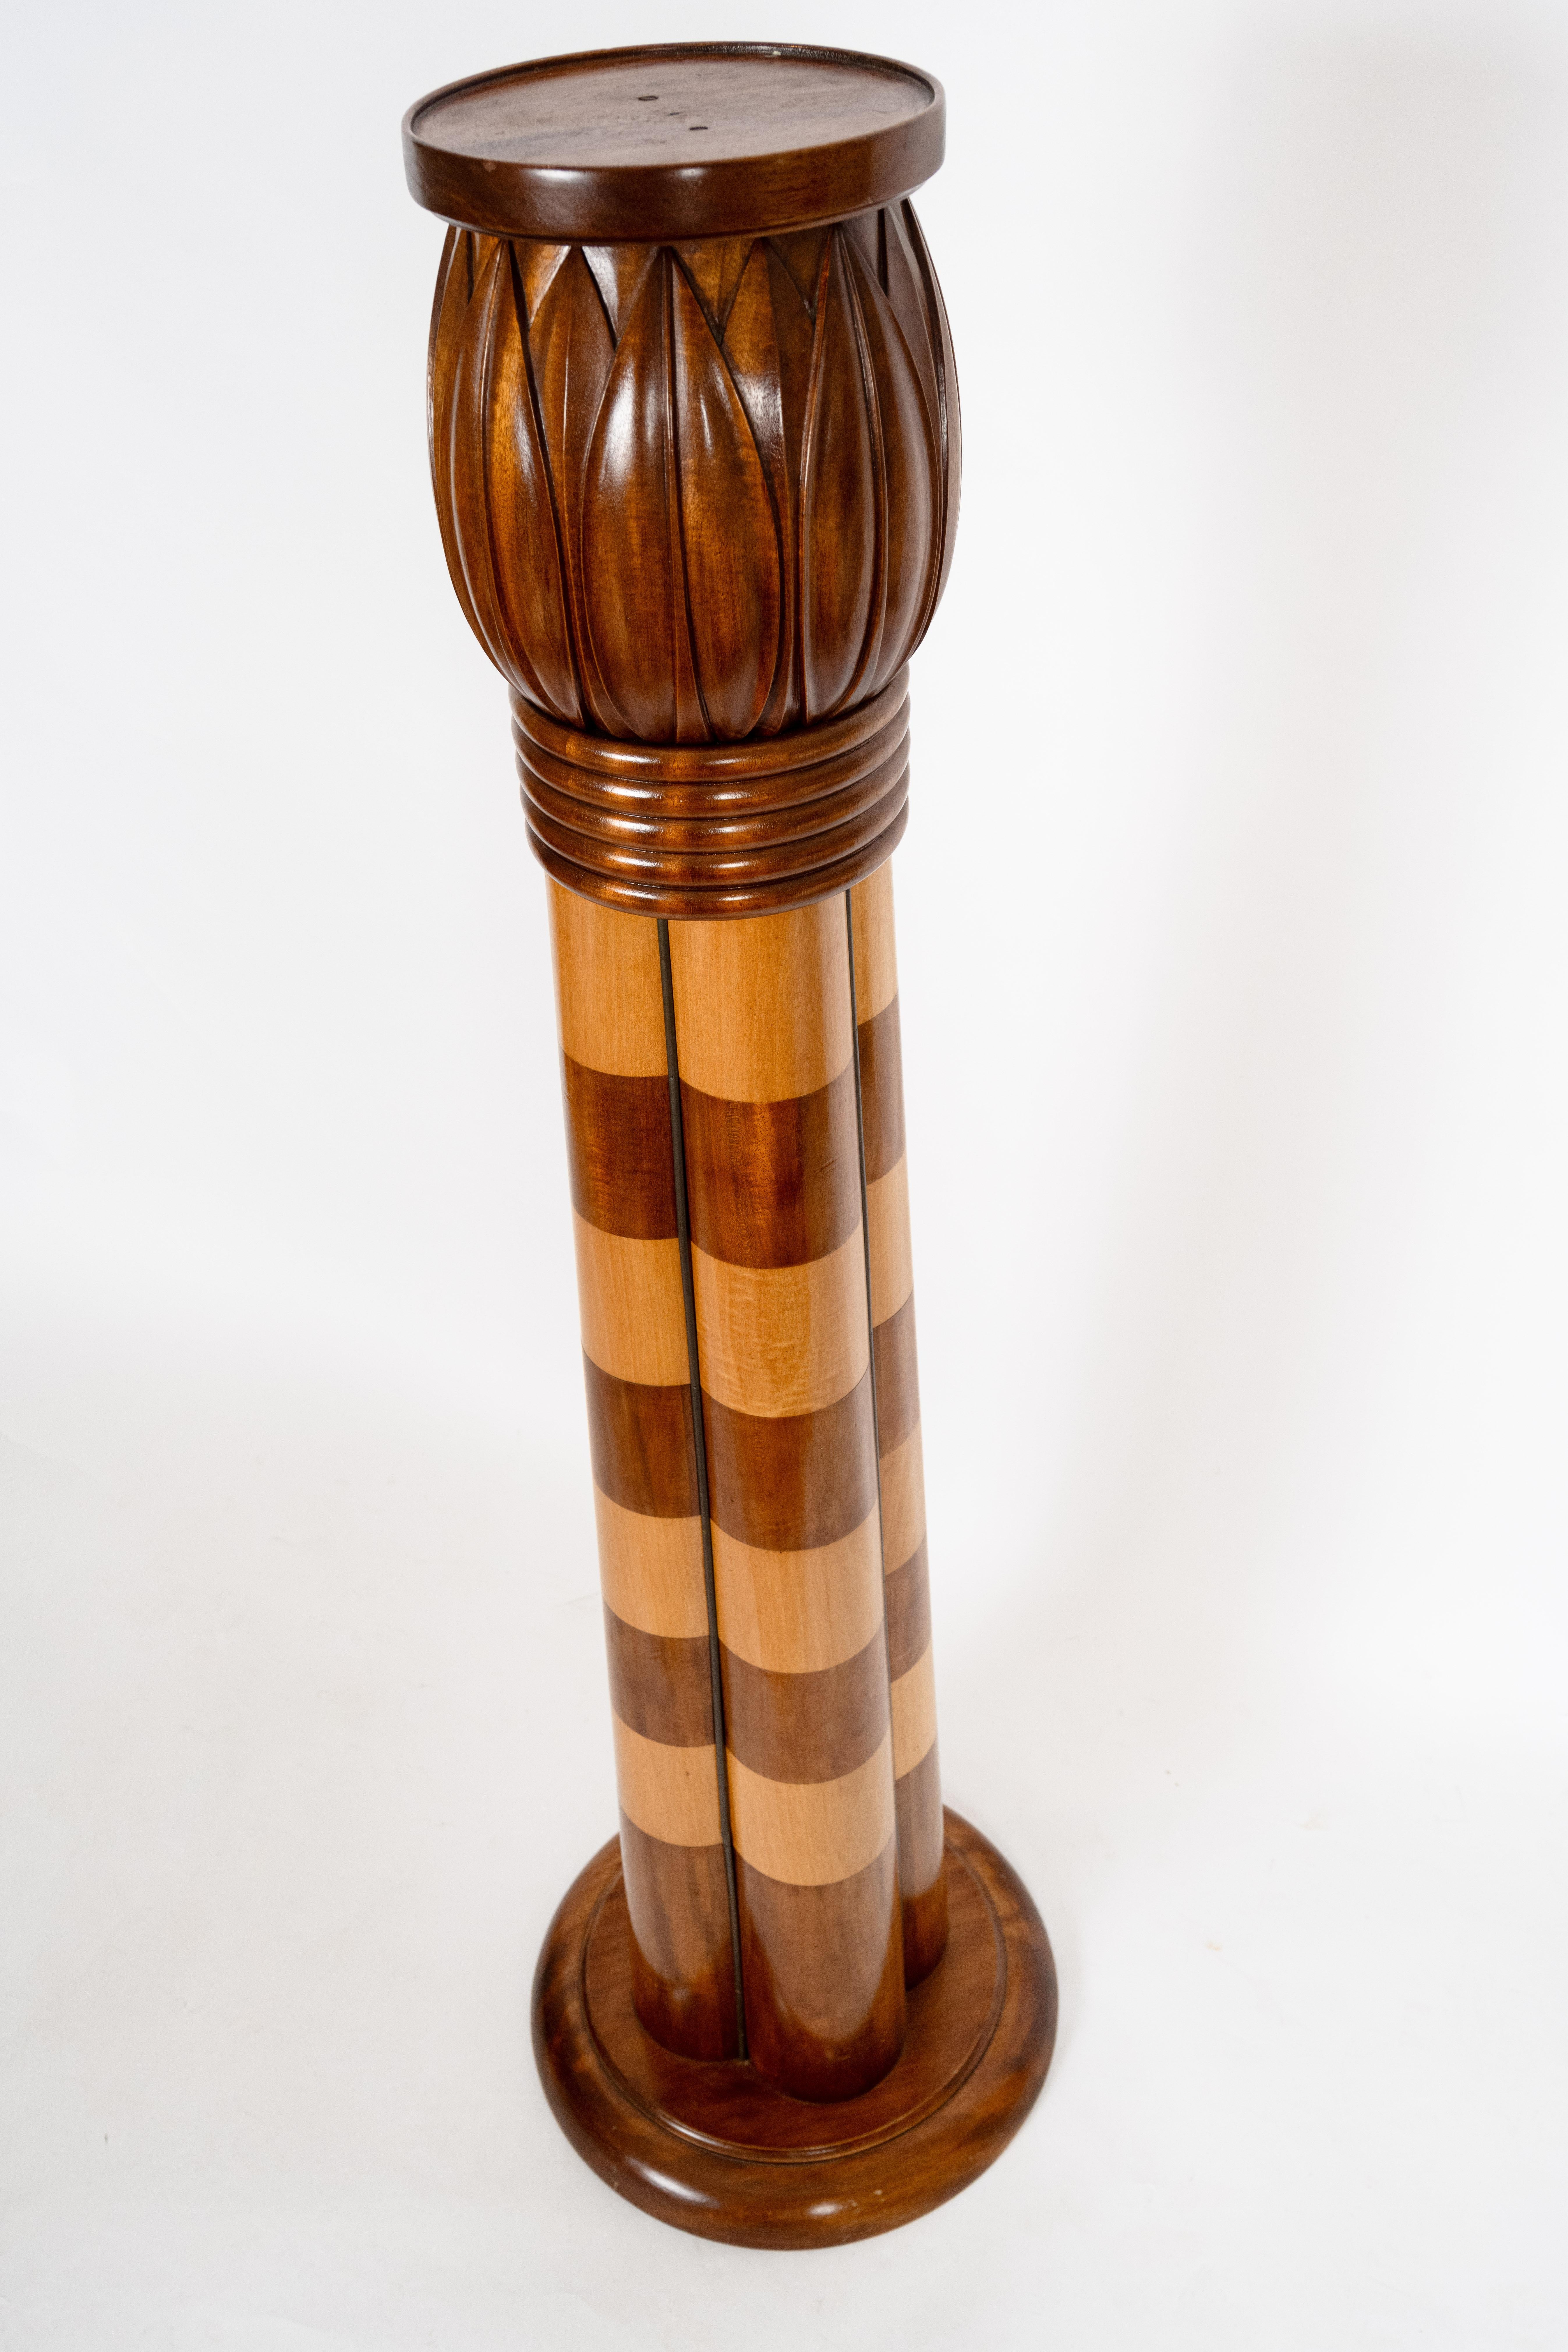 Ein Sockel in Form eines Bündels von Säulen. Der sich verjüngende Sockel wird von einem runden Sockel getragen und weist oben ein stilisiertes, geschnitztes Lotosblütenelement auf. Der Sockel aus kontrastierendem hellem und mittelfarbigem